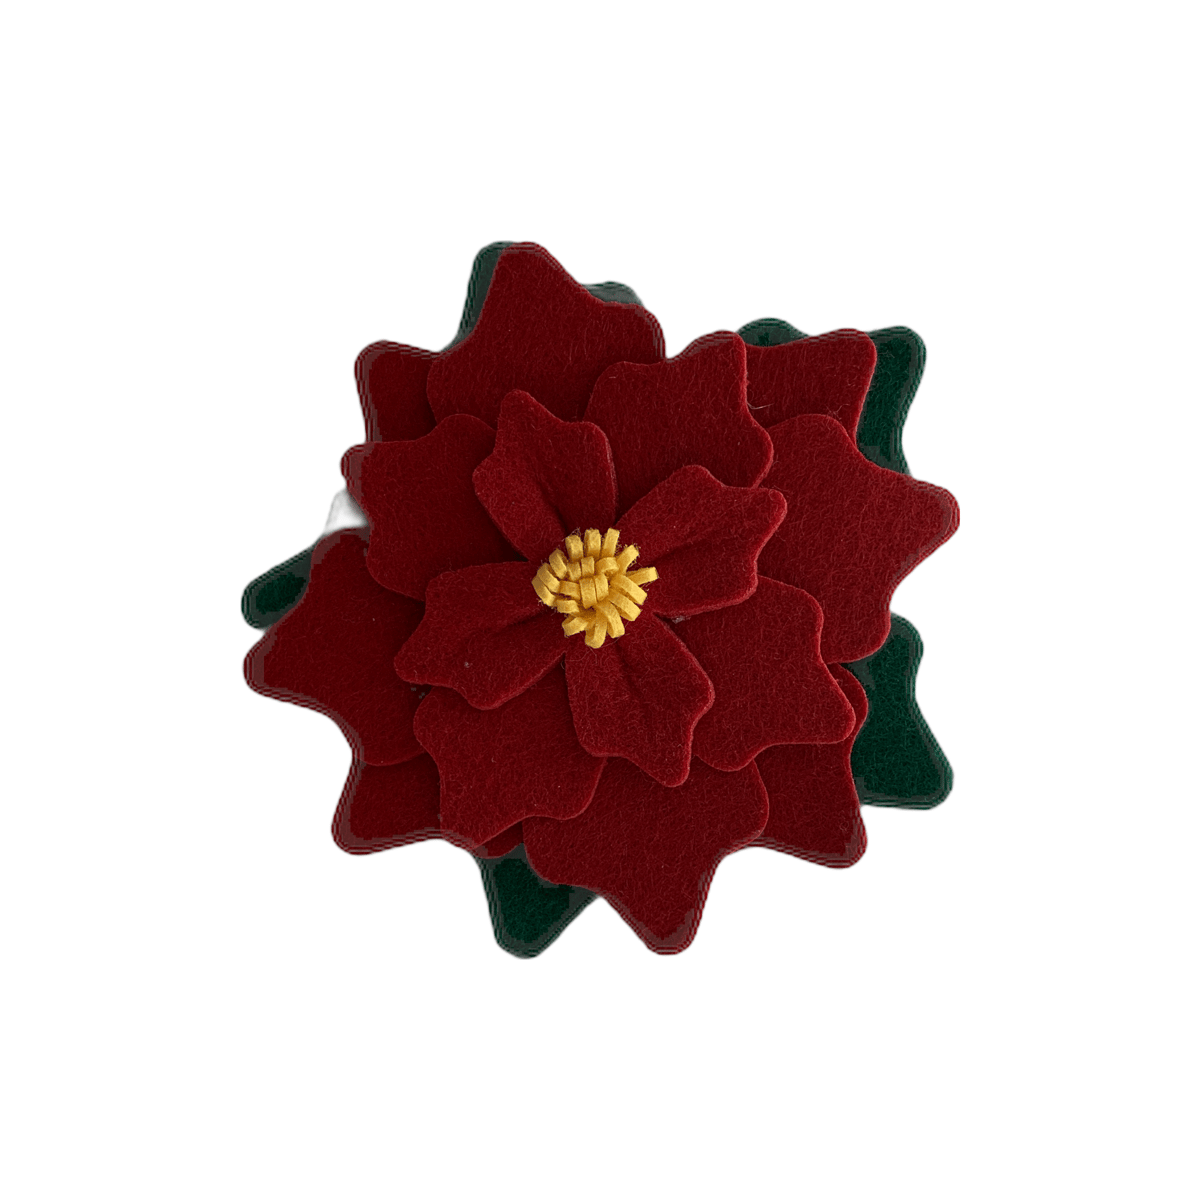 Pointsettia - Collar flower